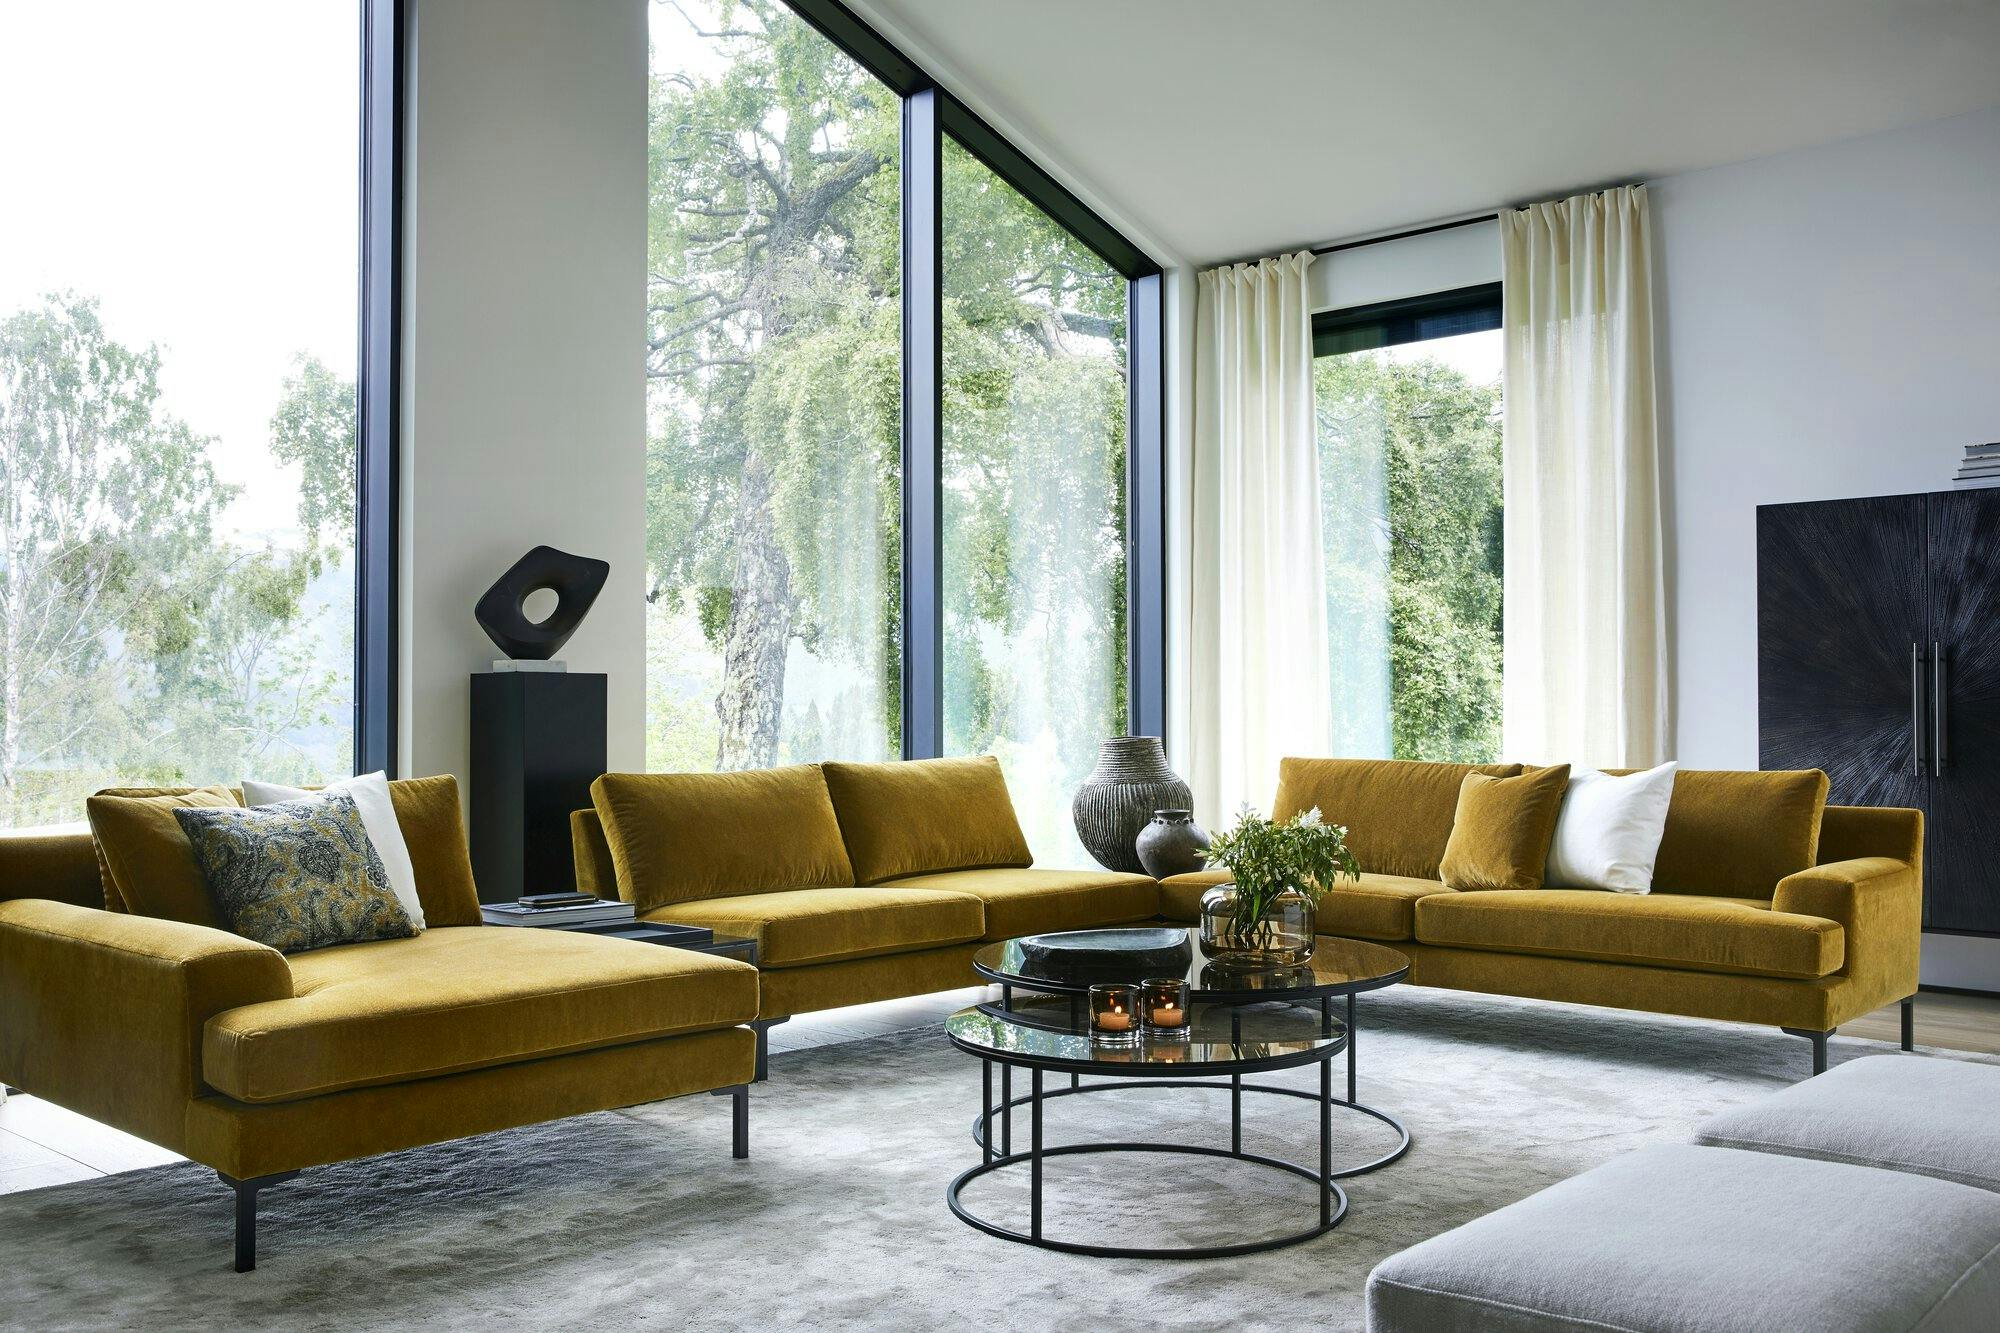 Sussex modular sofa